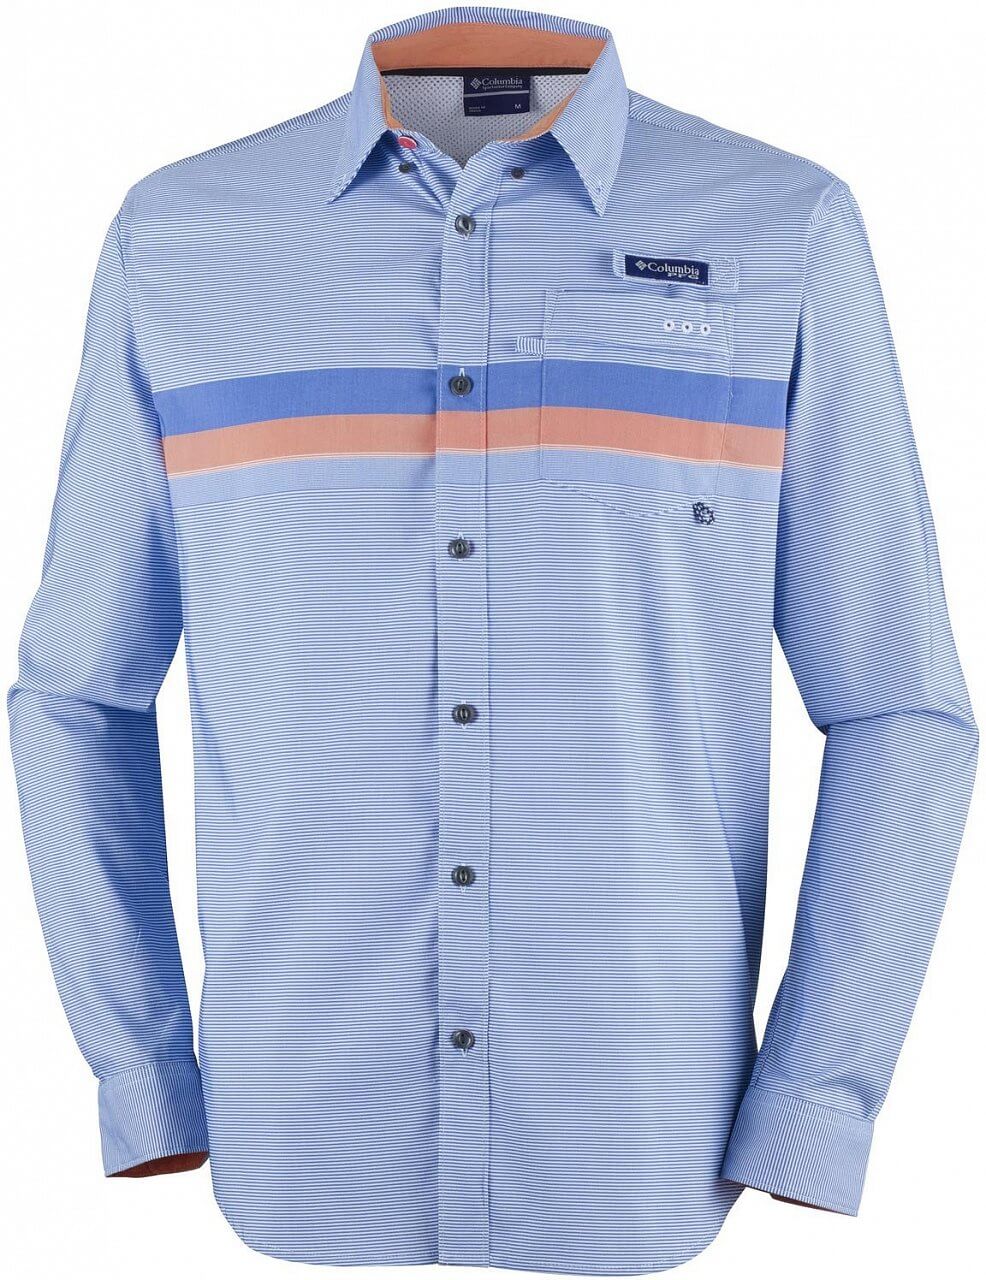 Pánská košile Columbia Super Harborside Men's Woven LS Shirt